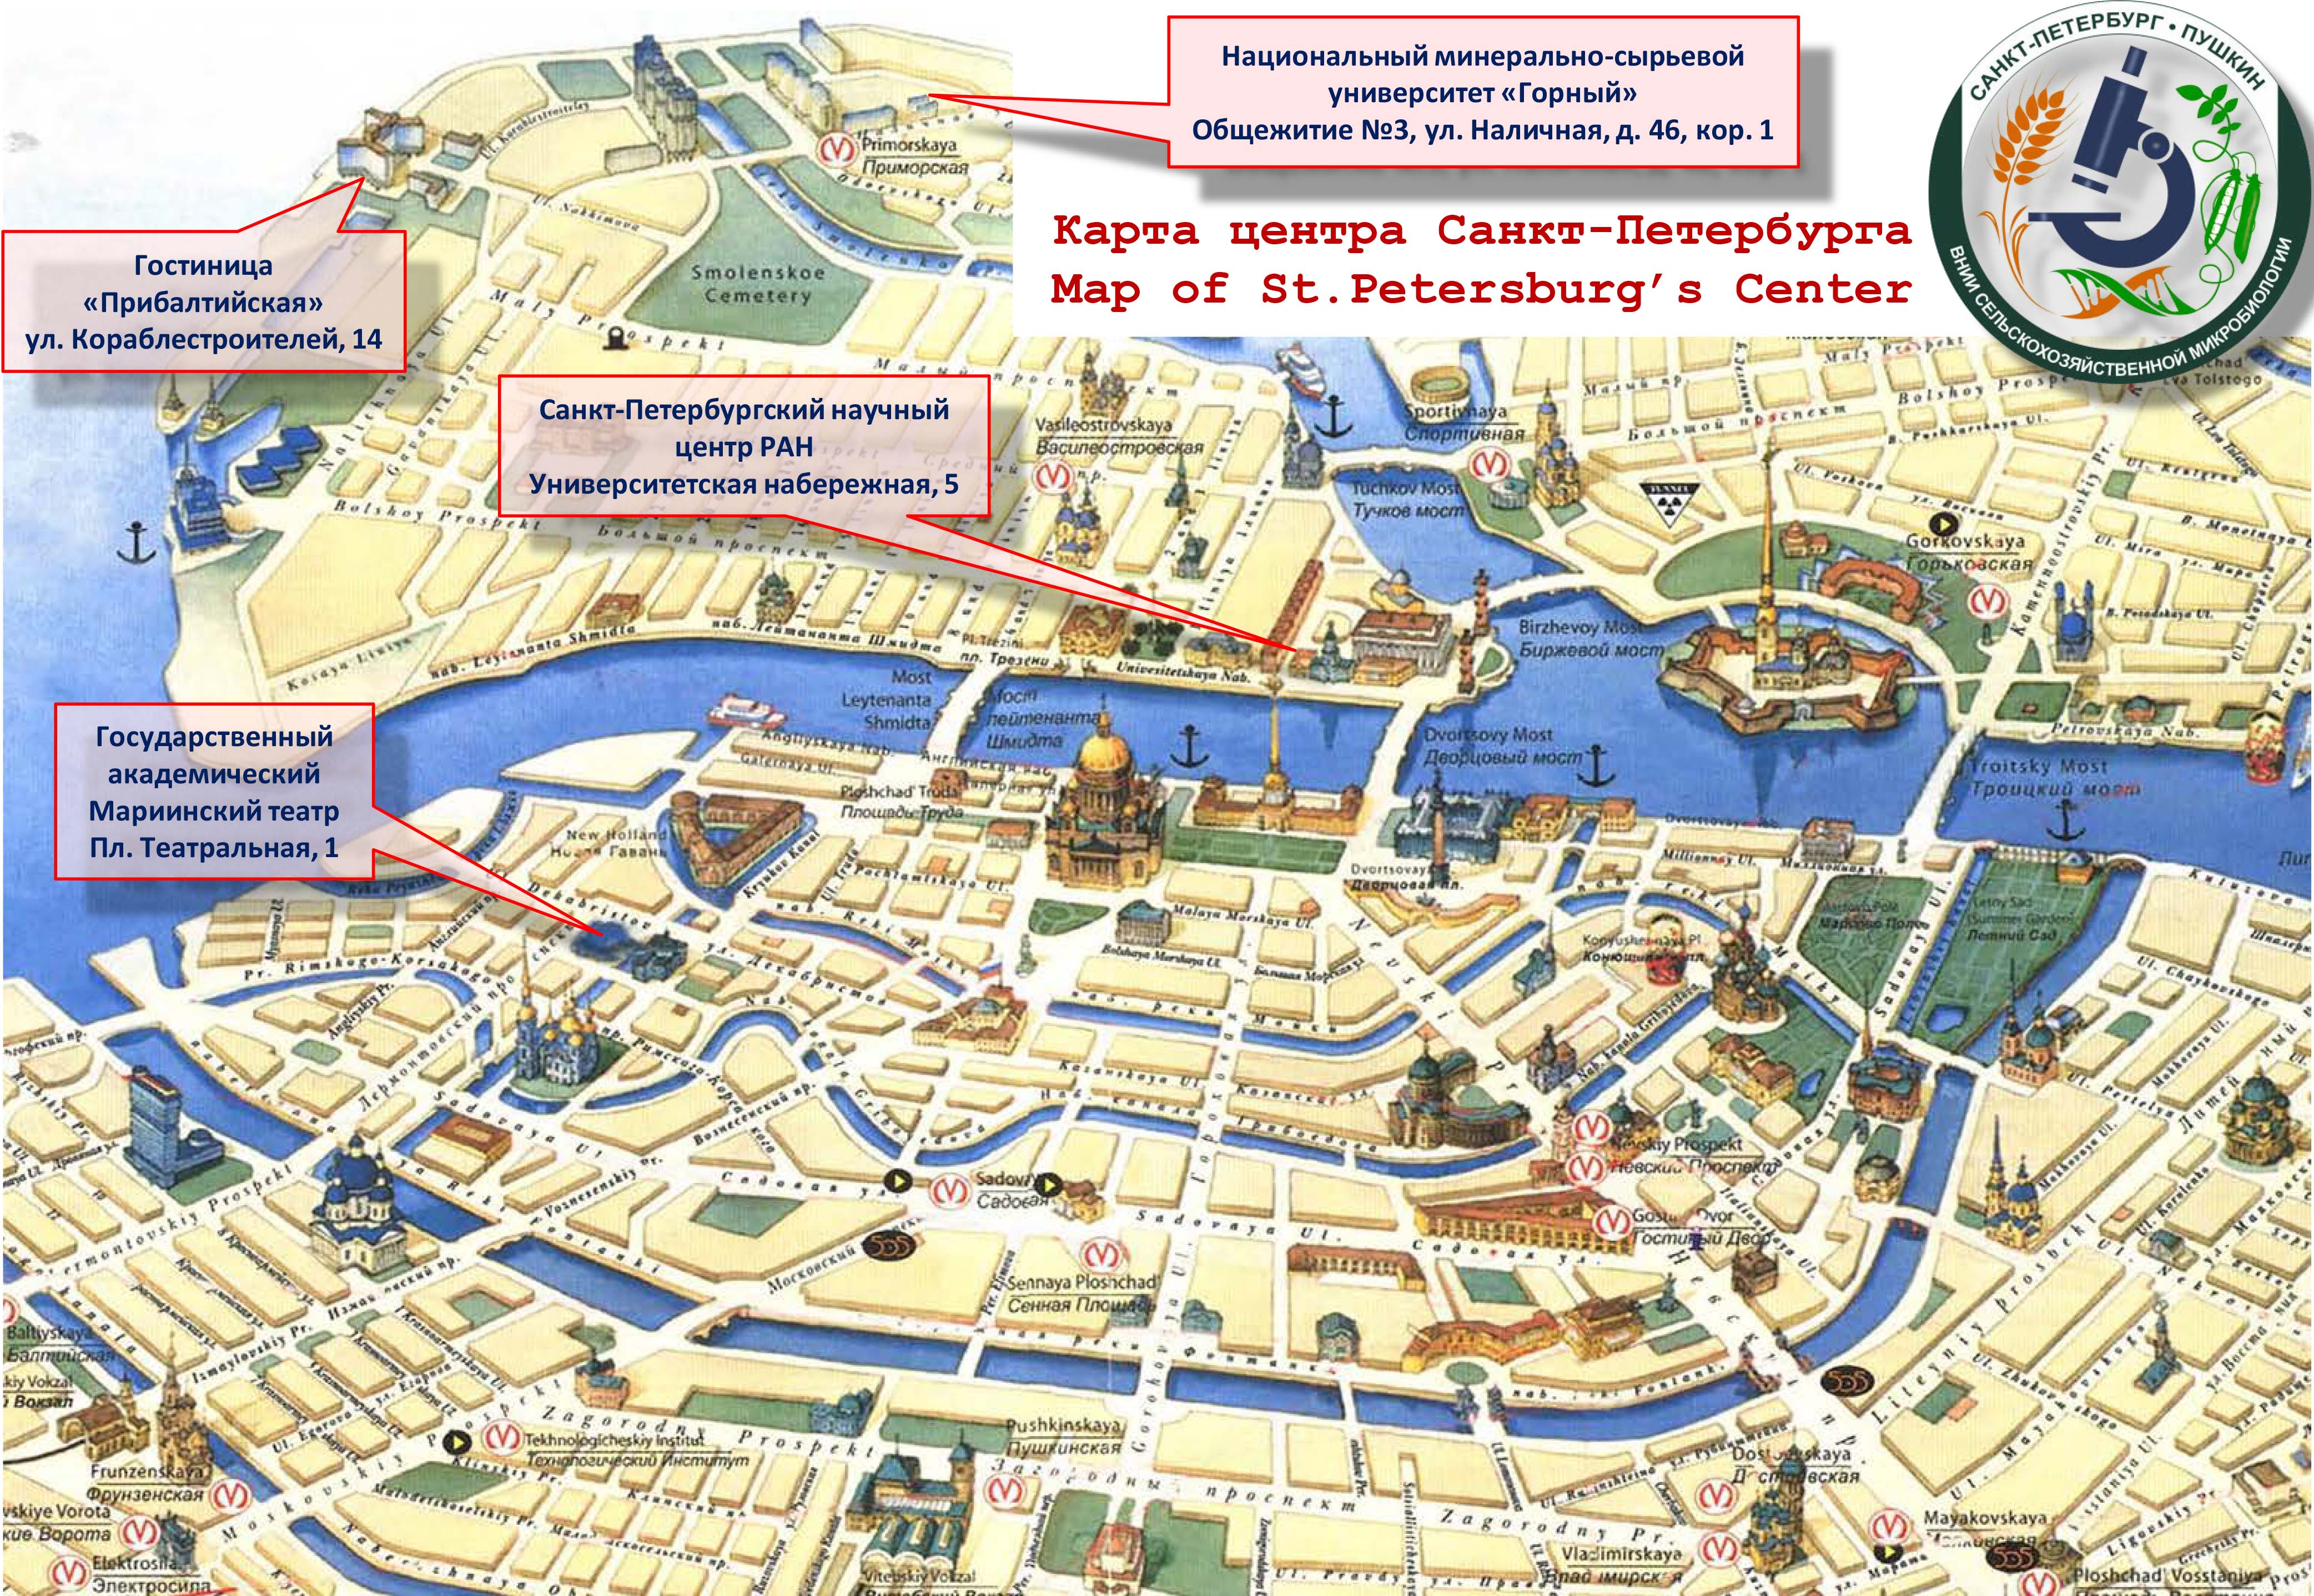 Список достопримечательностей санкт-петербурга с адресами, метро, фото, описанием | live to travel